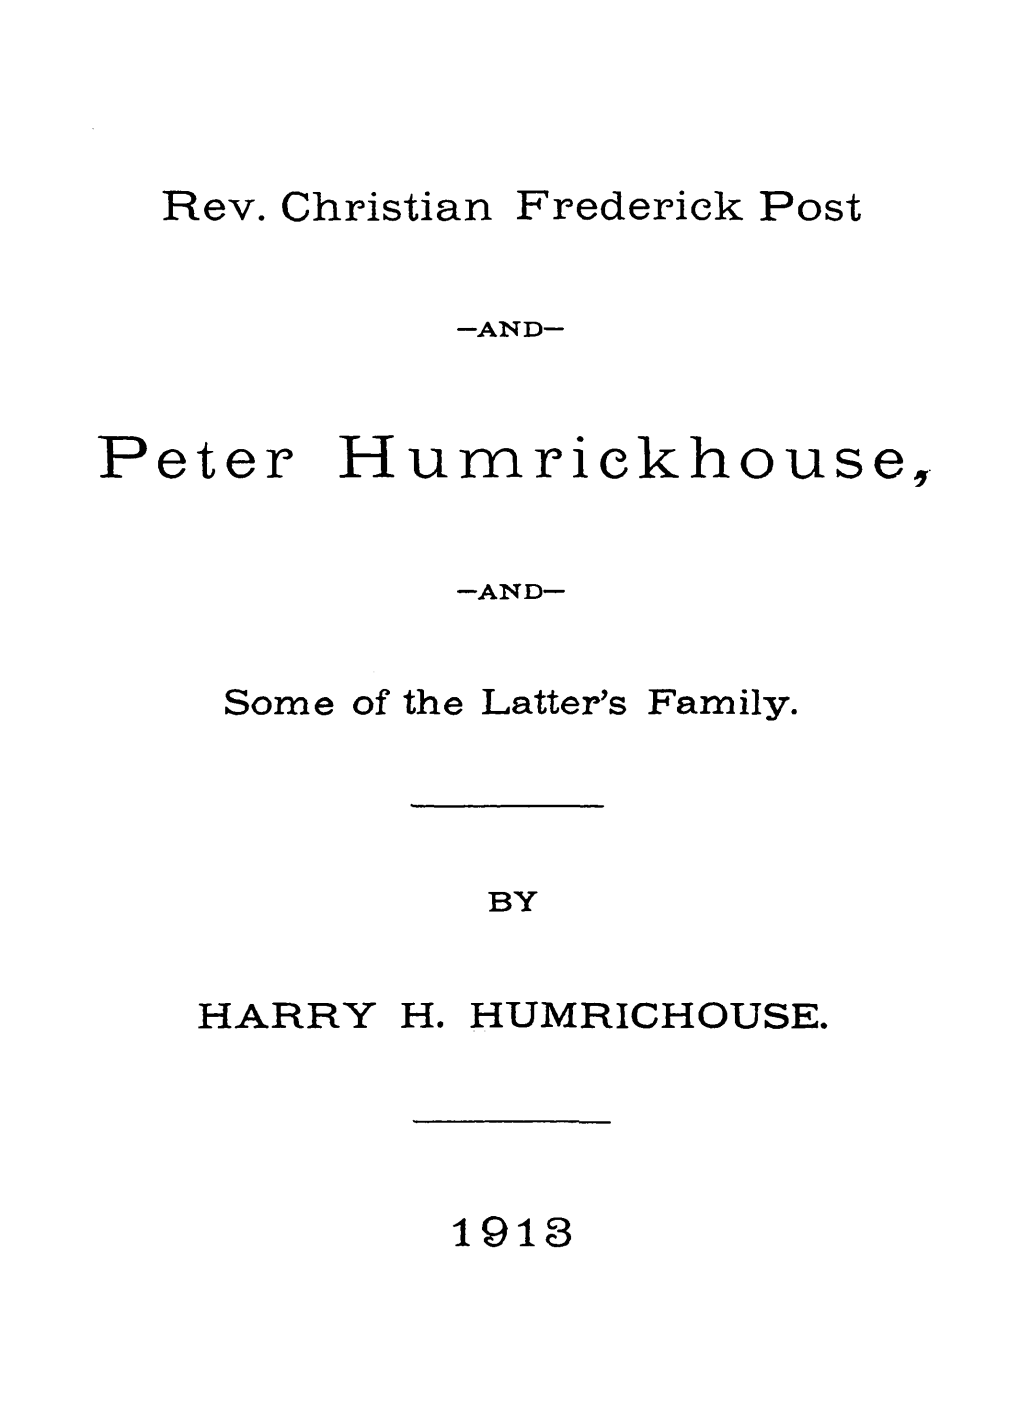 Peter Humrickhouse